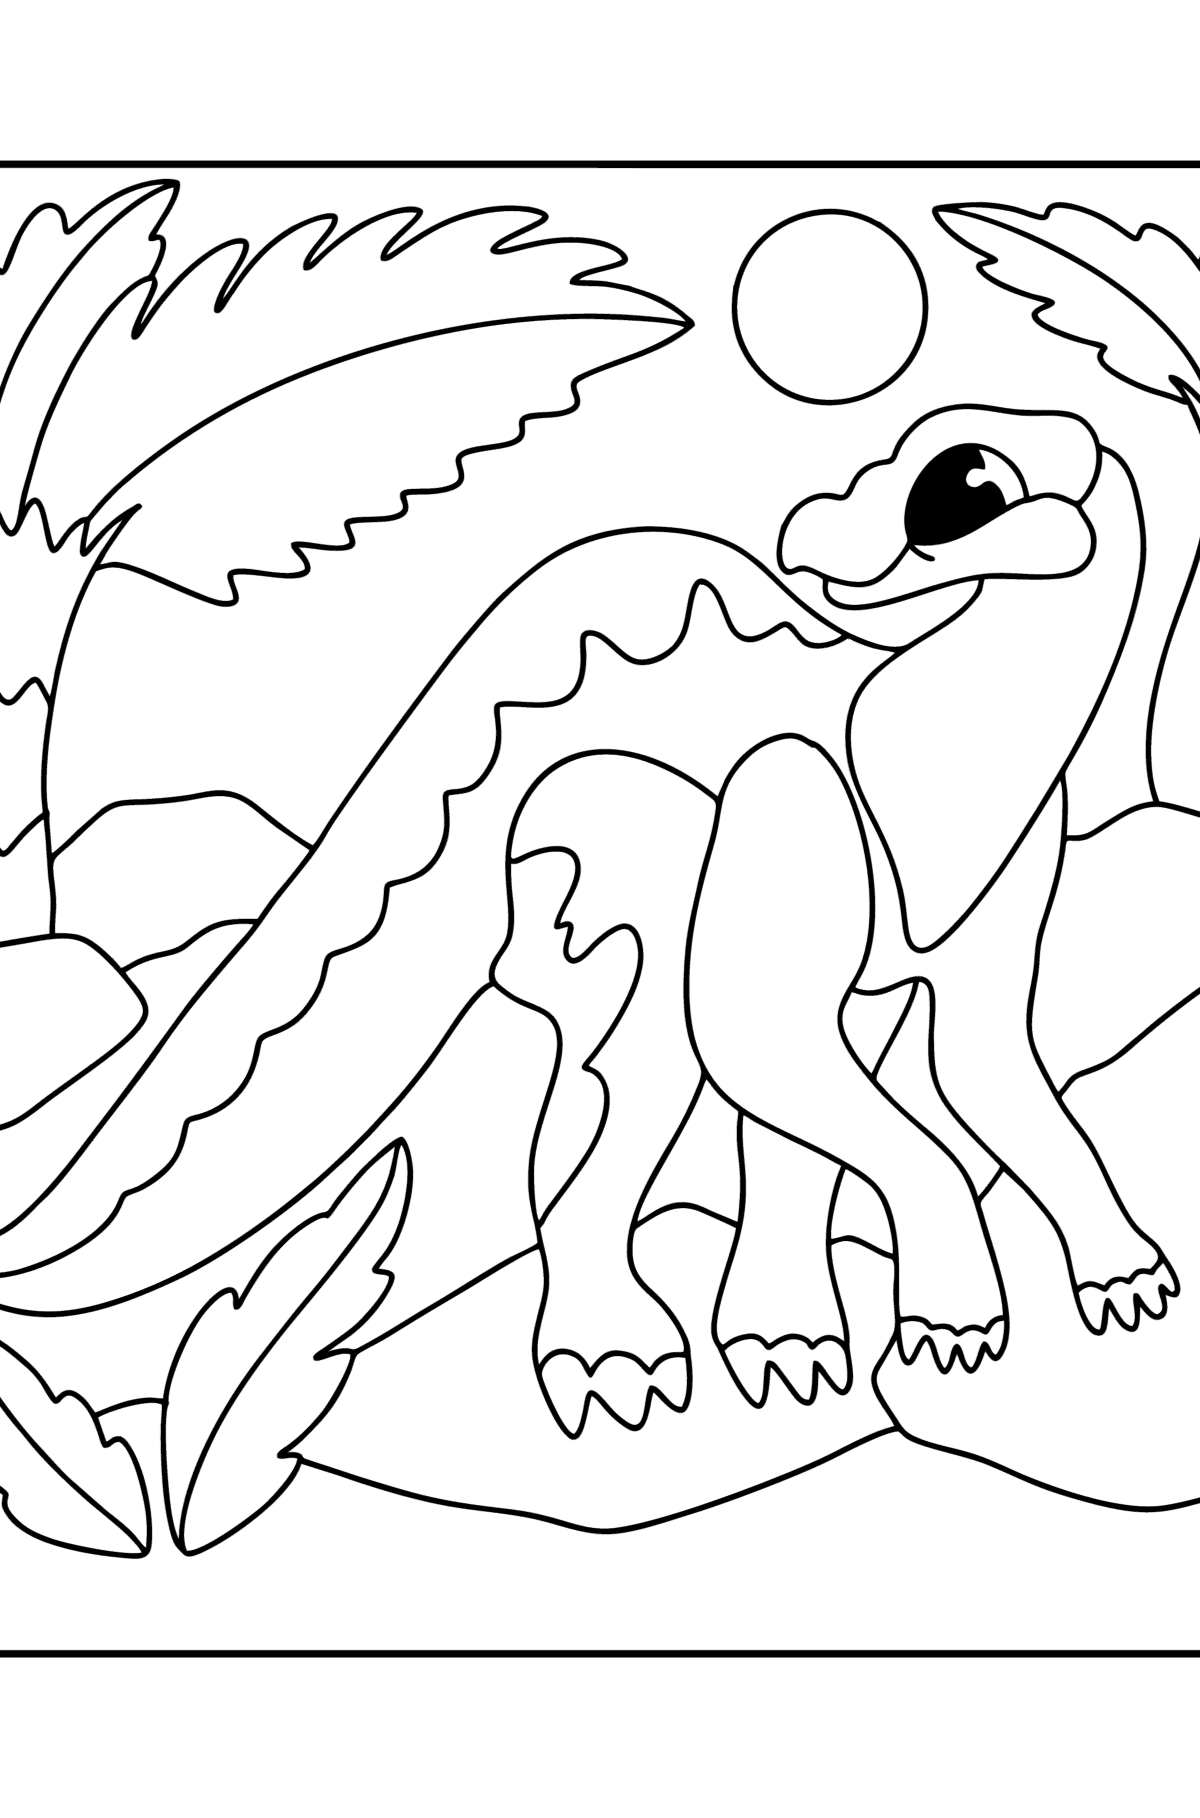 Ausmalbild Iguanodon - Malvorlagen für Kinder